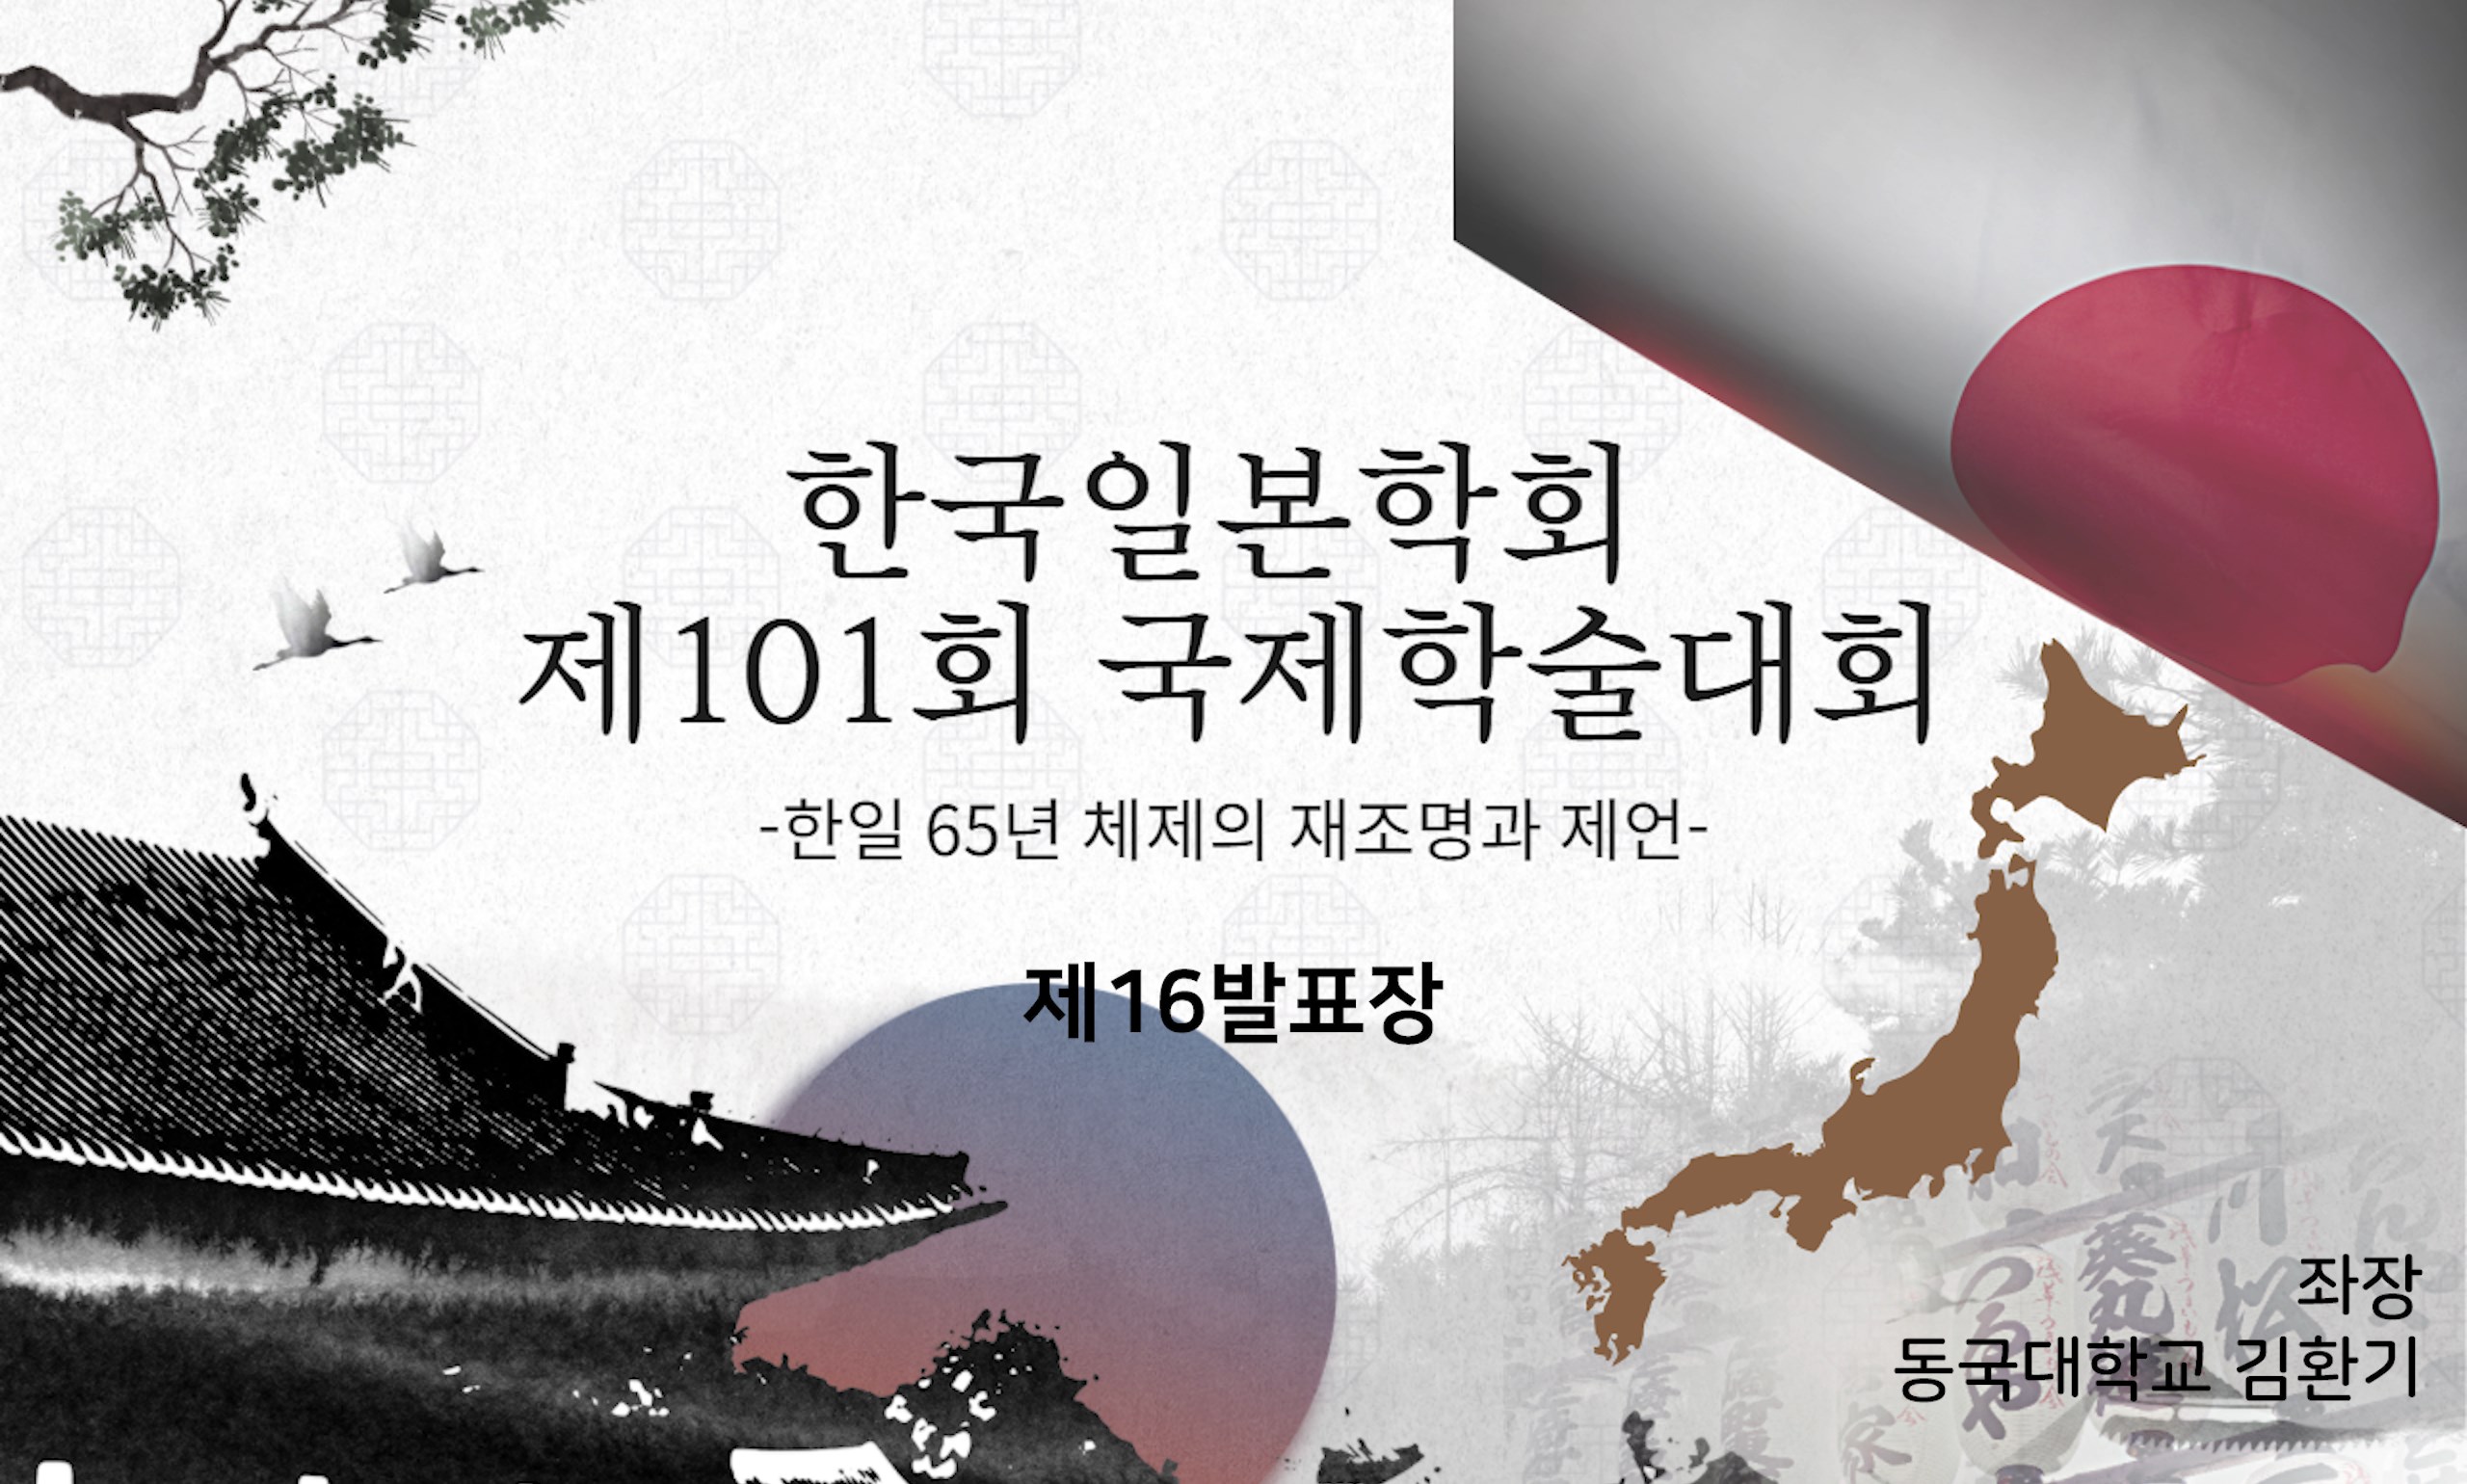 한국일본학회 제101회 국제학술대회 제16발표장